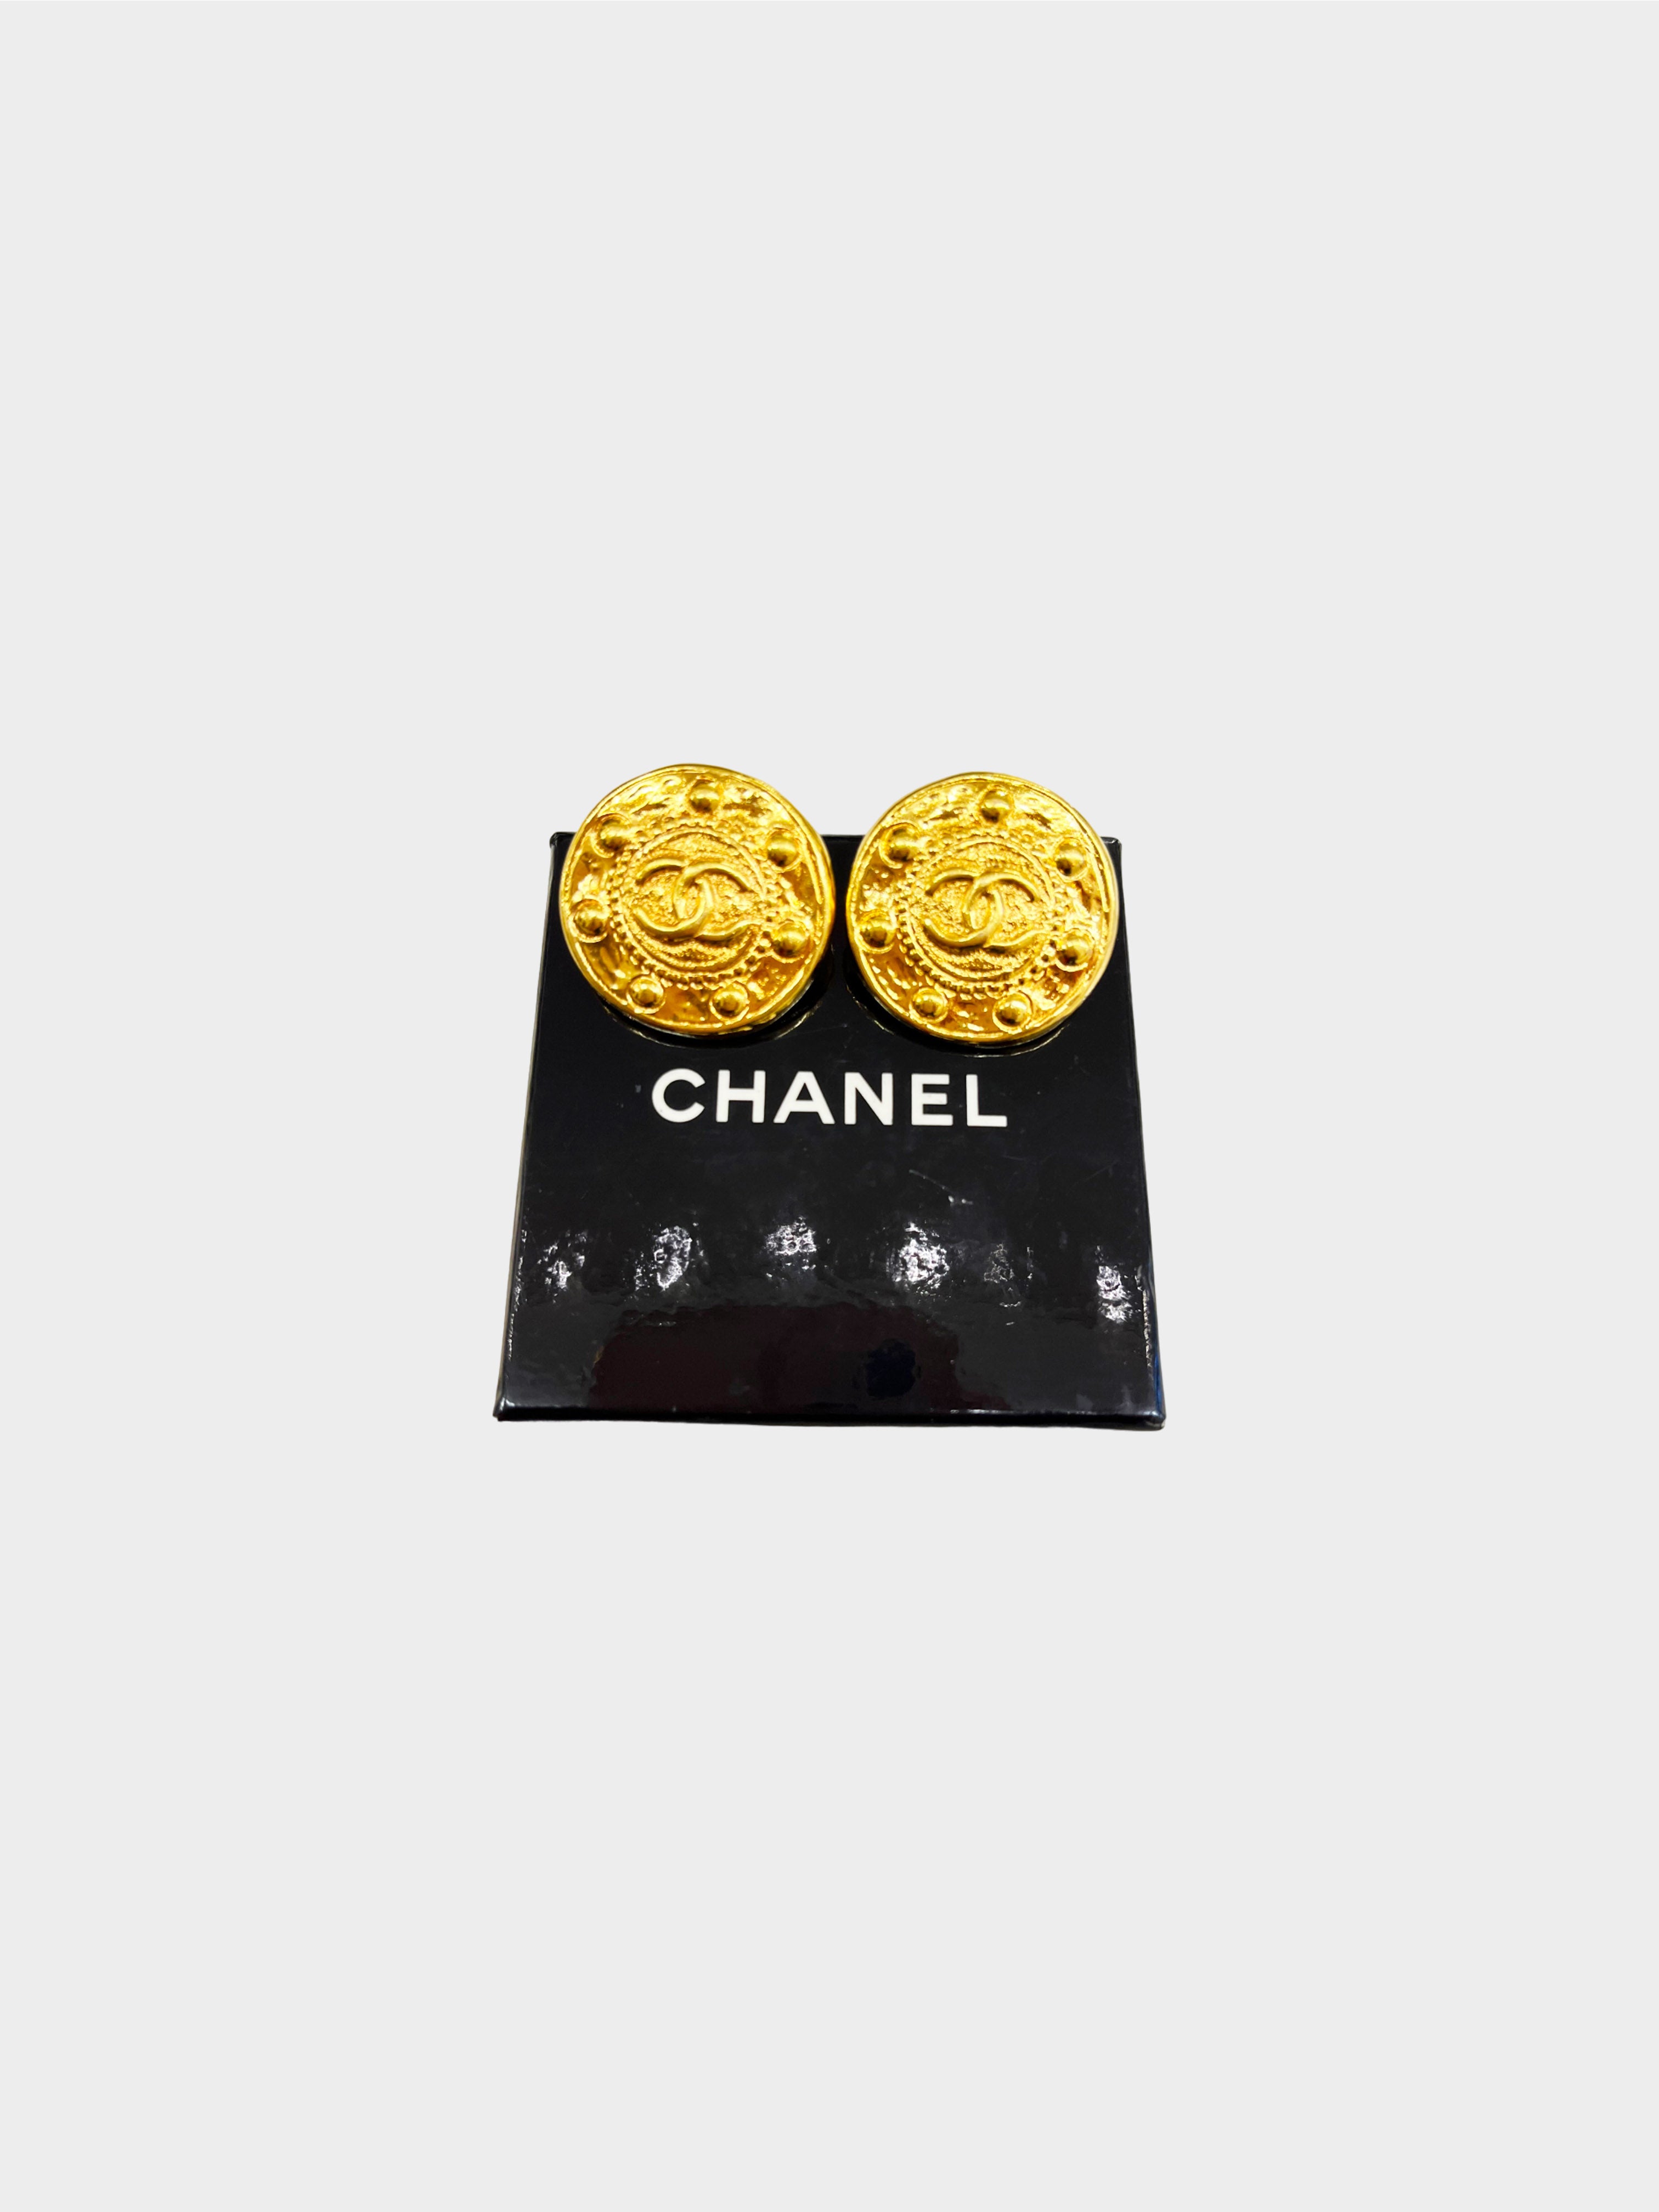 Chanel Spring 1995 Gold Medallion CC Earrings